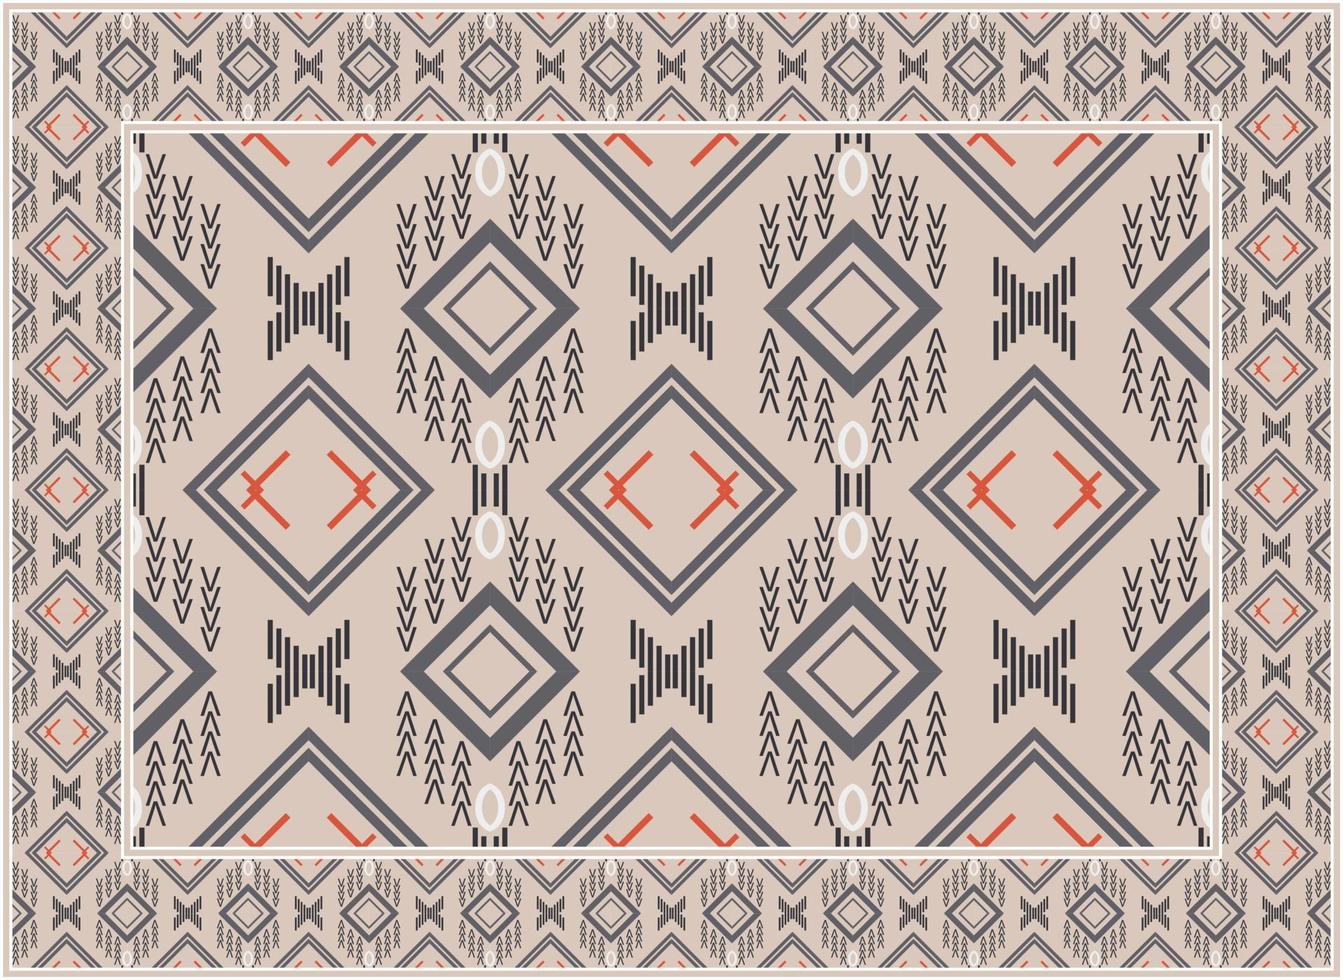 persisch Teppich Muster, afrikanisch ethnisch nahtlos Muster Boho persisch Teppich Leben Zimmer afrikanisch ethnisch aztekisch Stil Design zum drucken Stoff Teppiche, Handtücher, Taschentücher, Schals Teppich, vektor